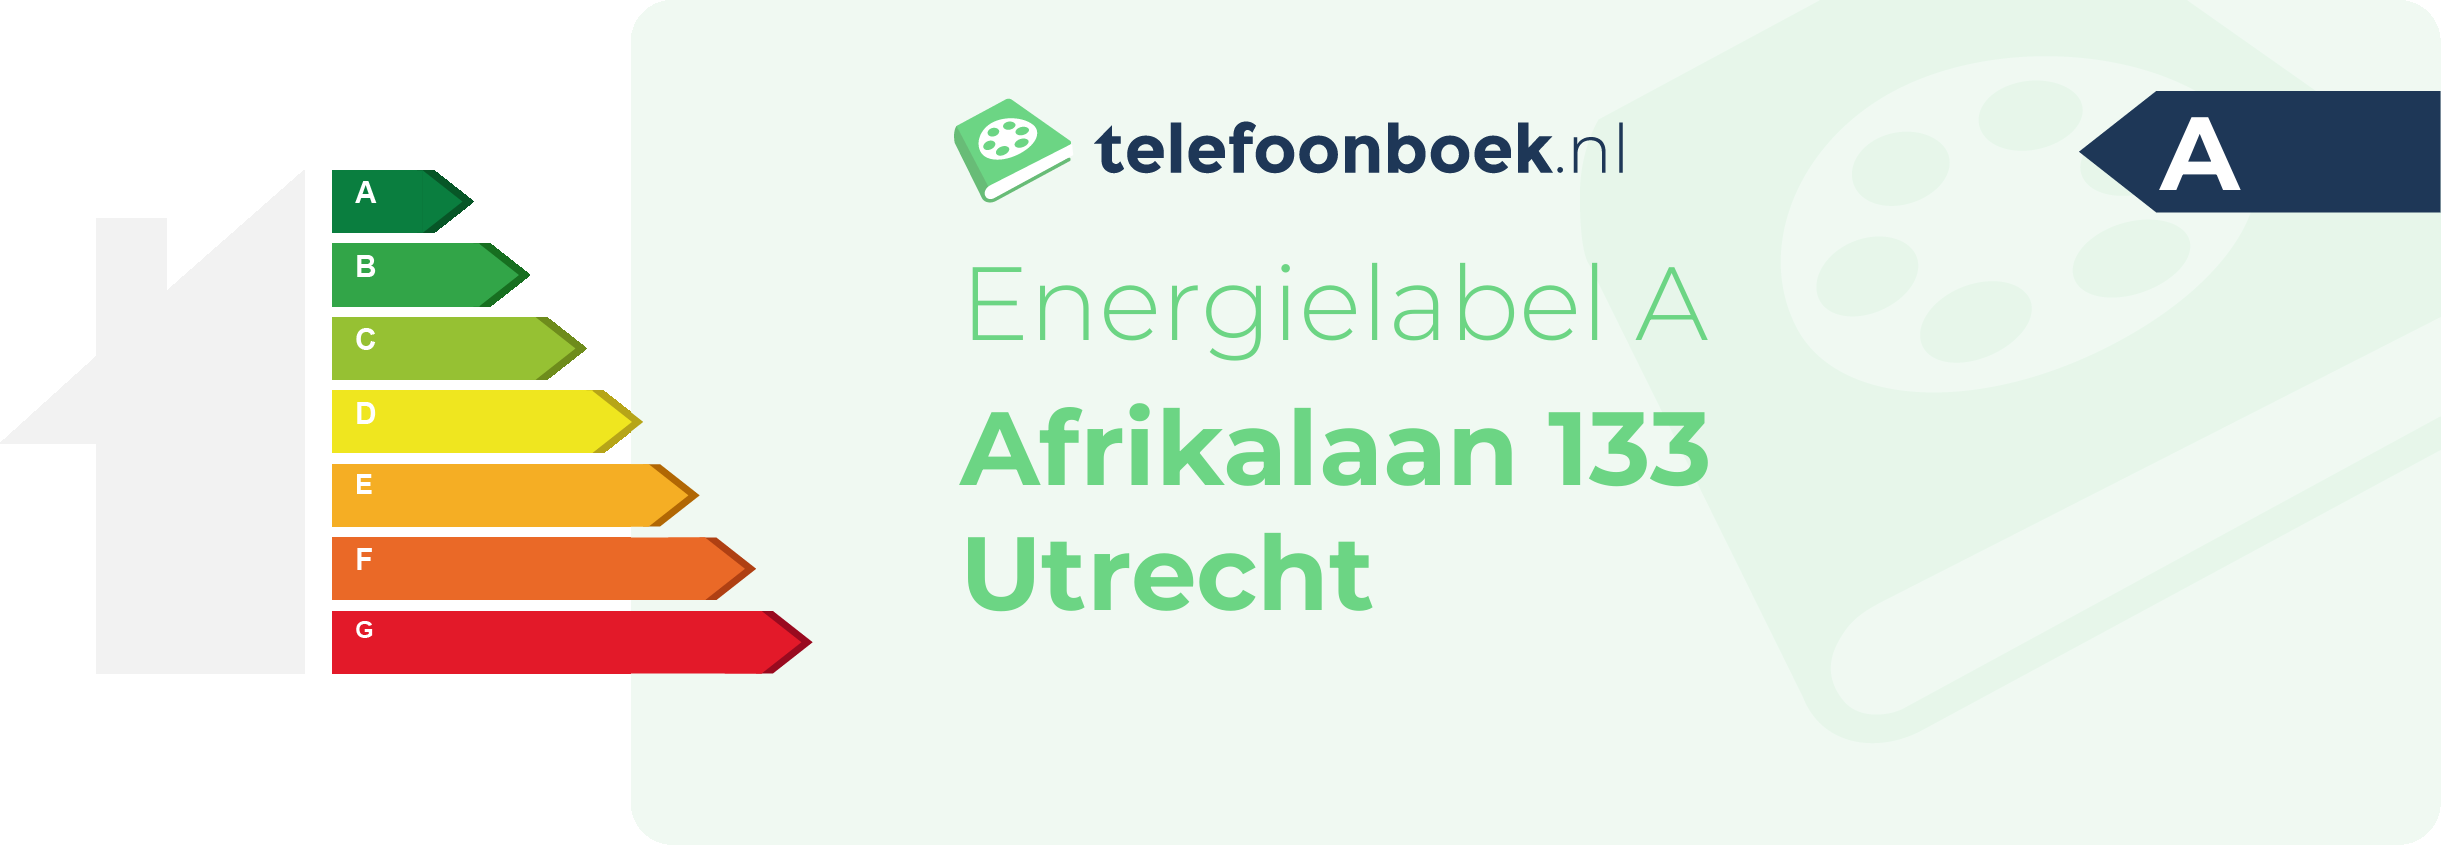 Energielabel Afrikalaan 133 Utrecht